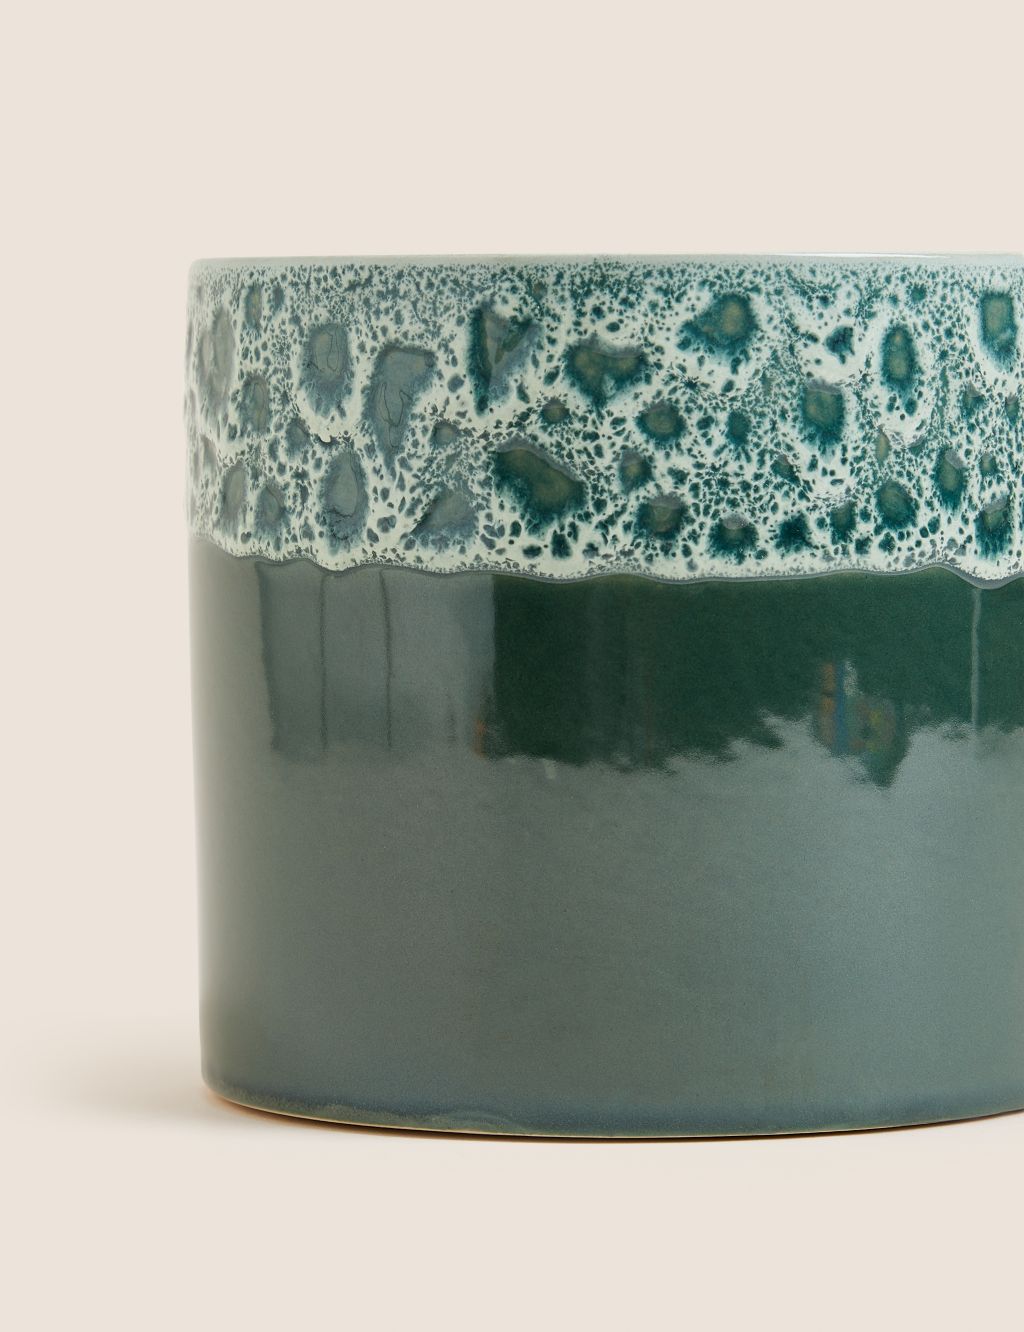 Medium Ceramic Glazed Planter image 2